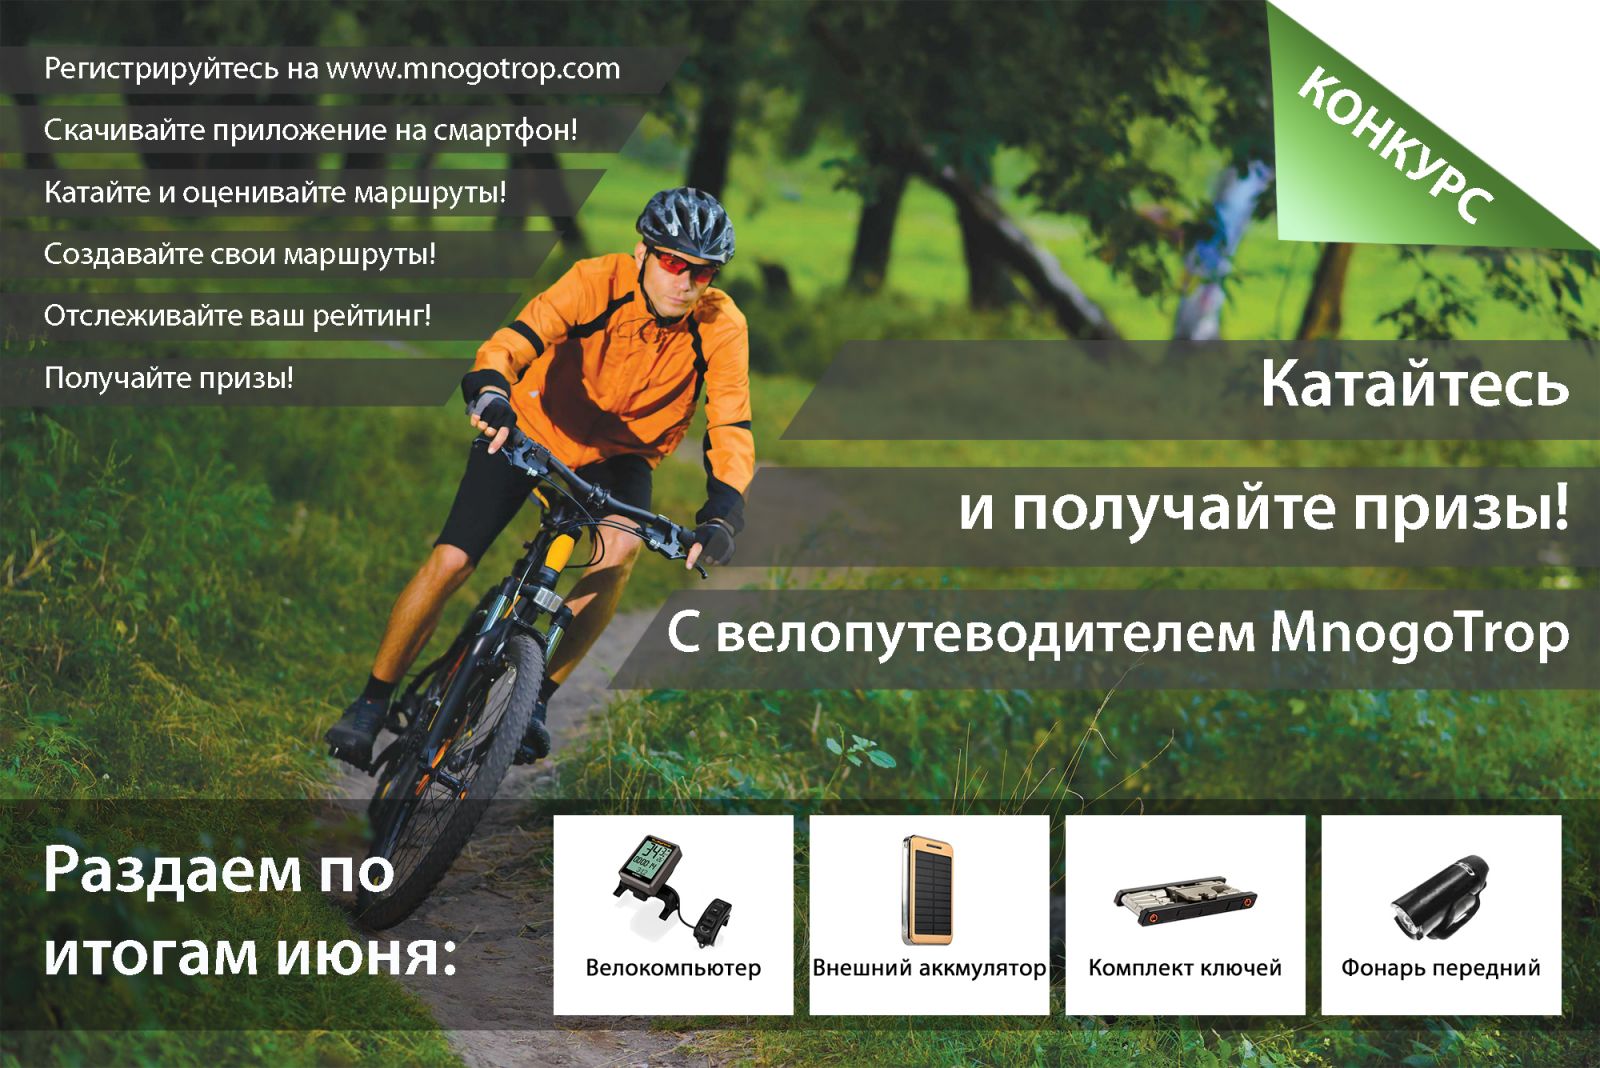 Призы активным пользователям велопутеводителя MnogoTrop в июне